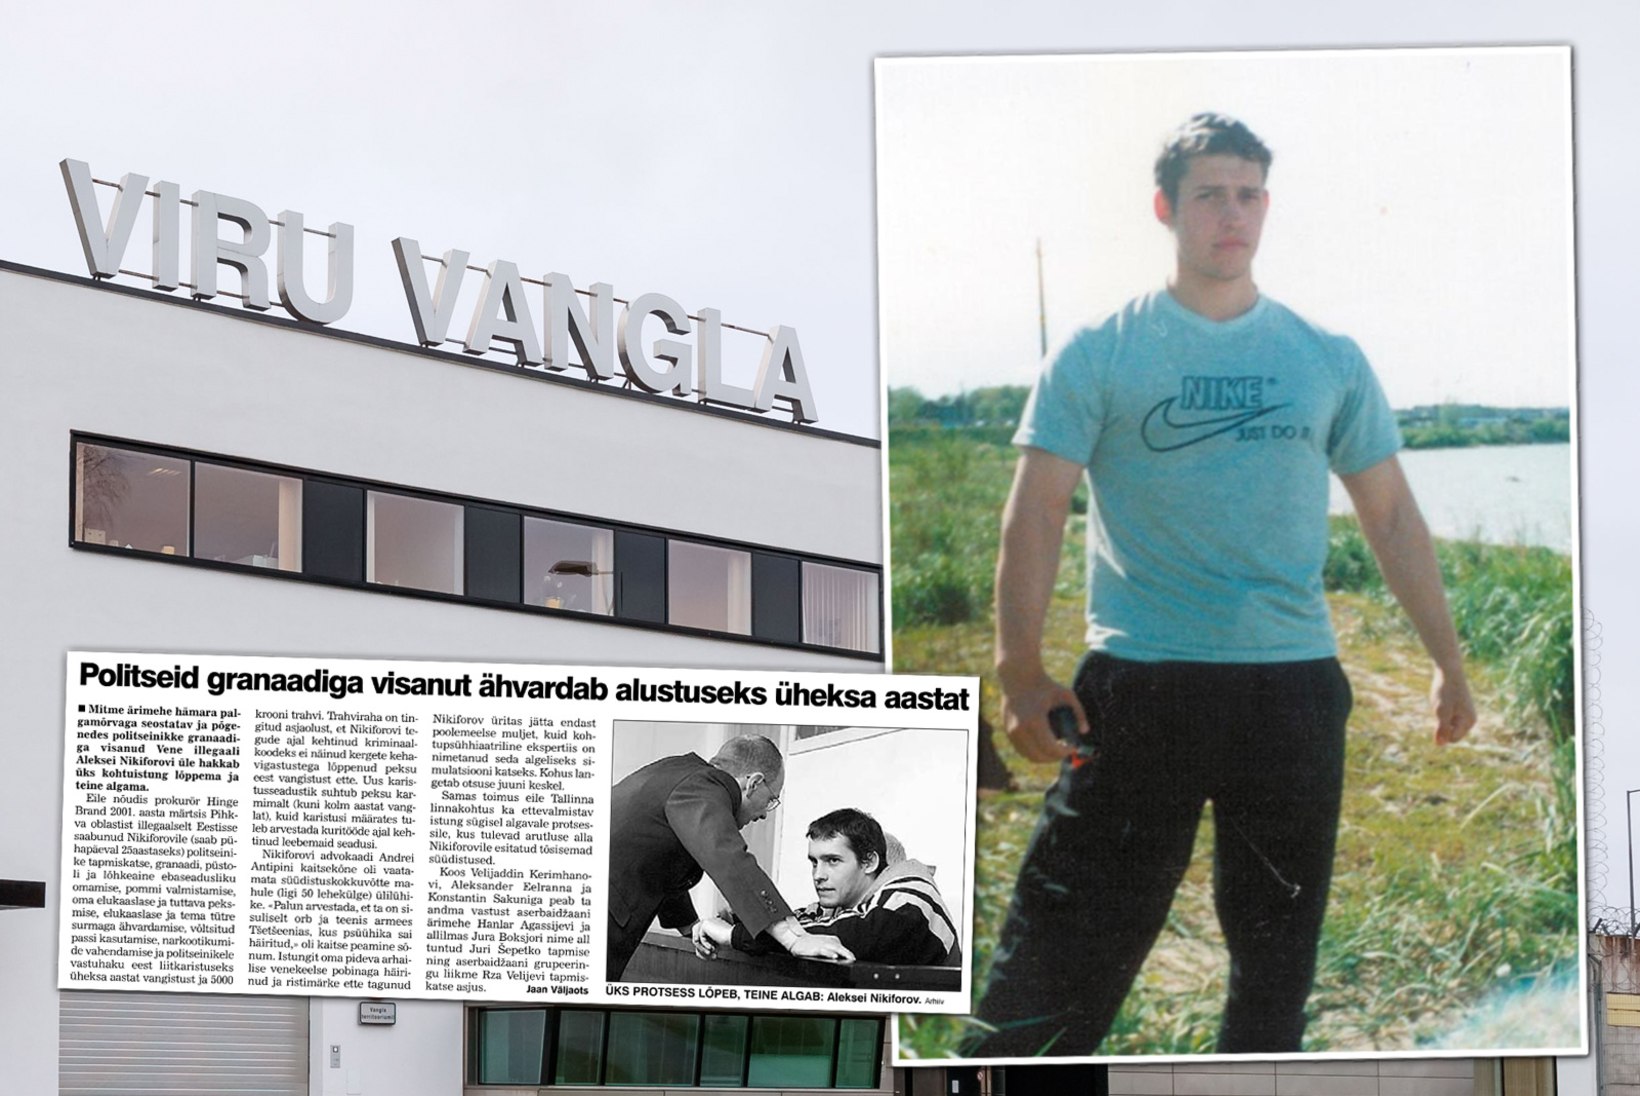 Tšetšeenia sõja veteranist palgamõrvar soovib eesti keelt õppida. Vangla ei näe sellel mõtet